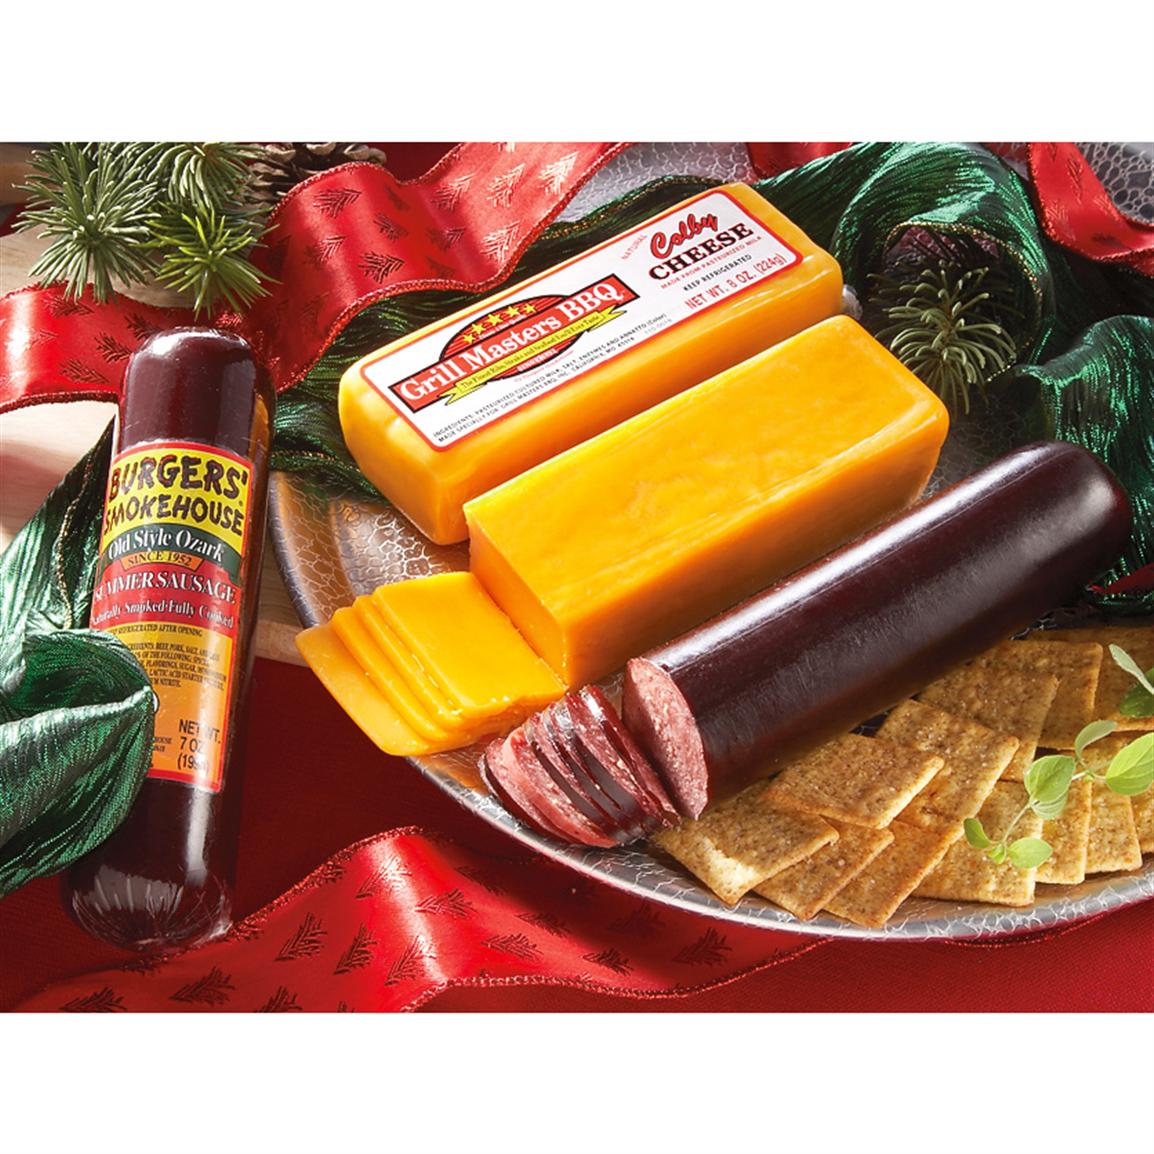 Sausage & Cheese Gift Box 170603, Food Gifts at